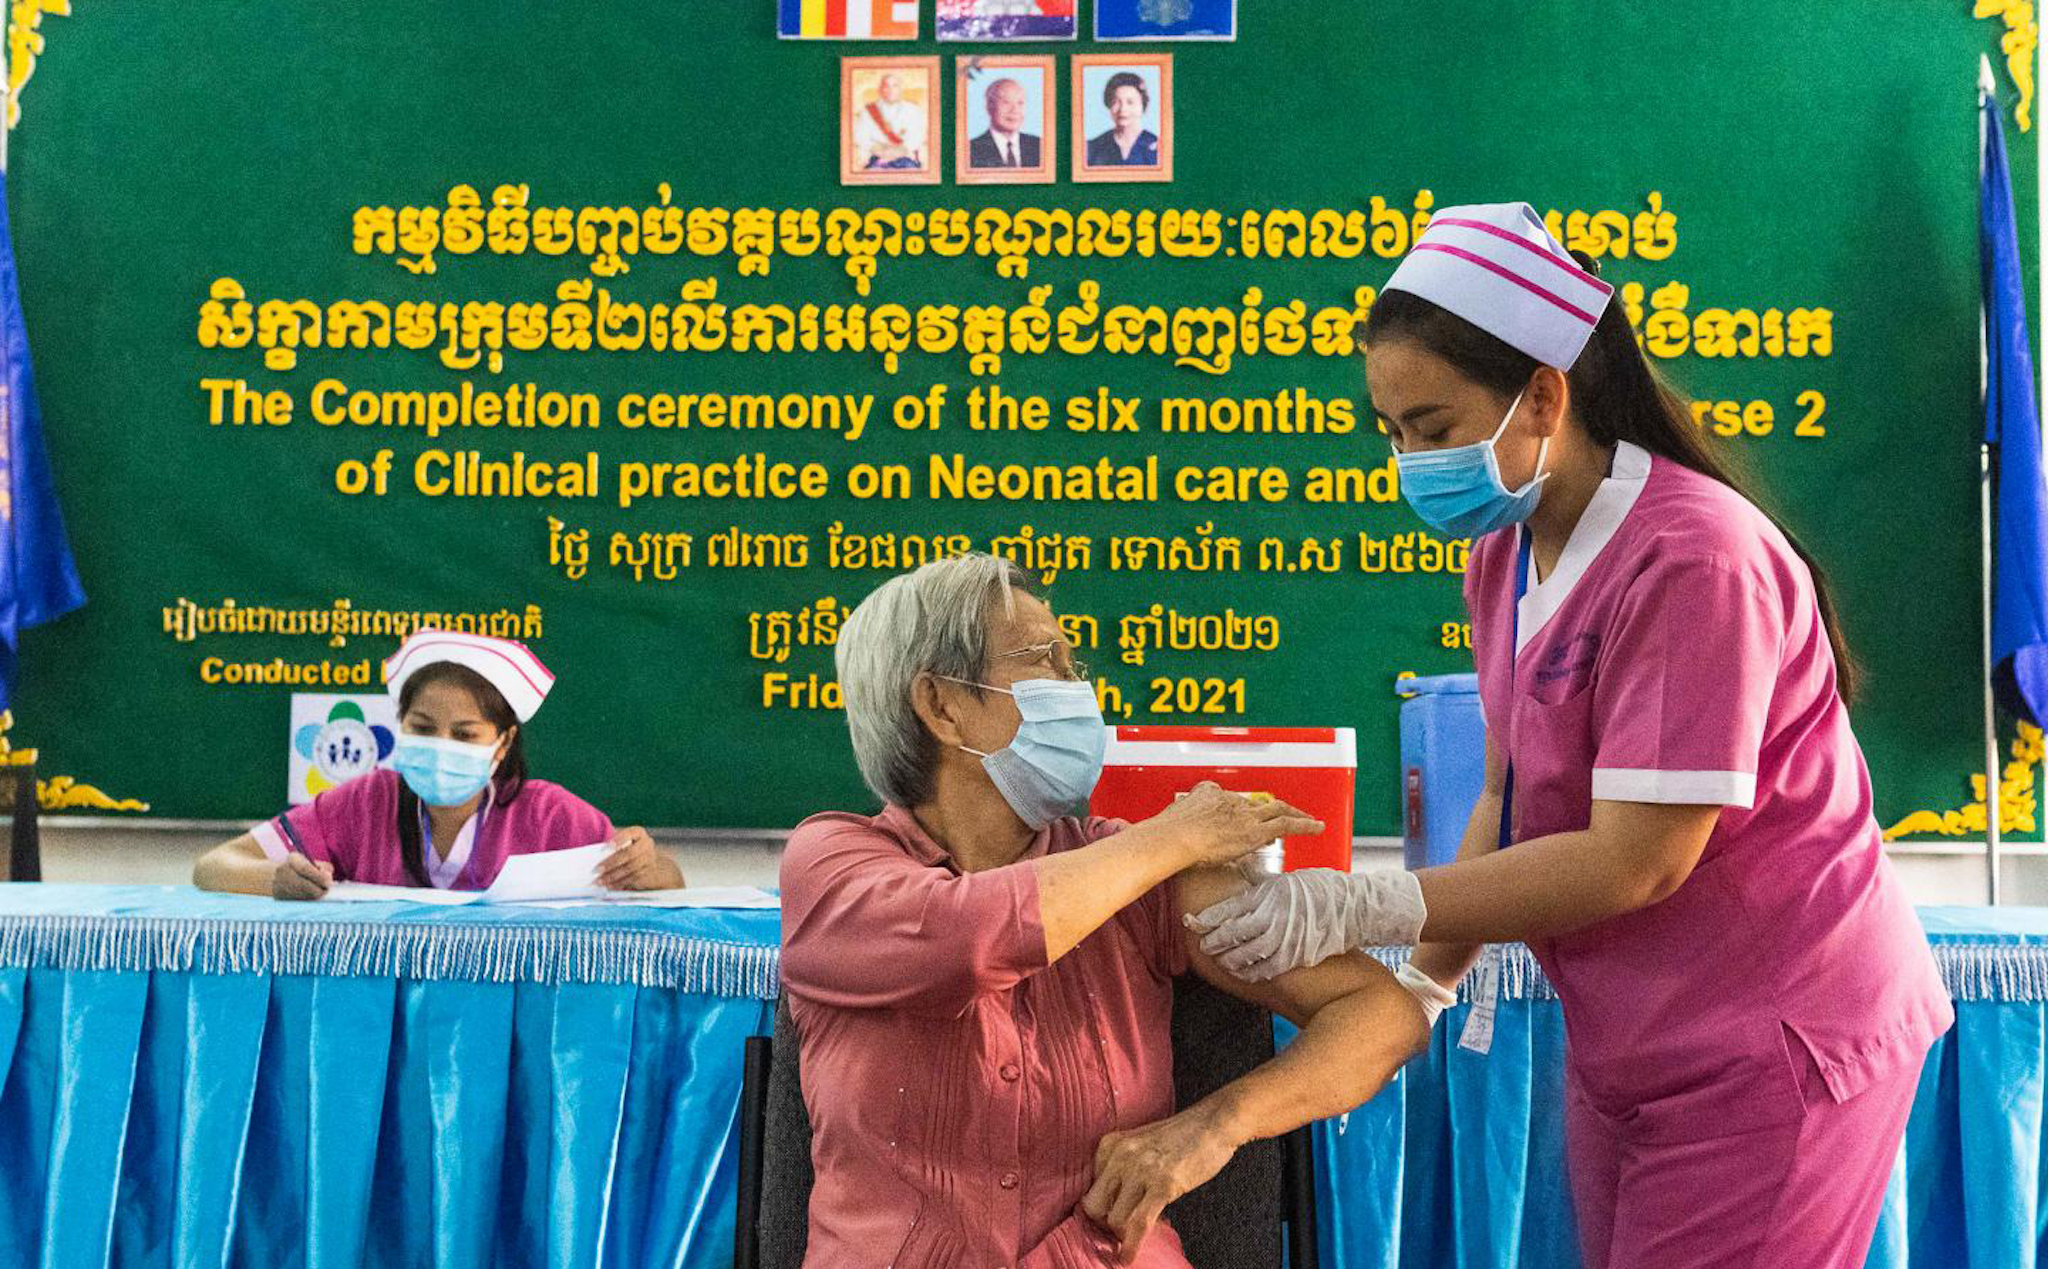 Phnom Penh cấm những người chưa tiêm chủng đến các điểm công cộng, dù bất kỳ lý do gì